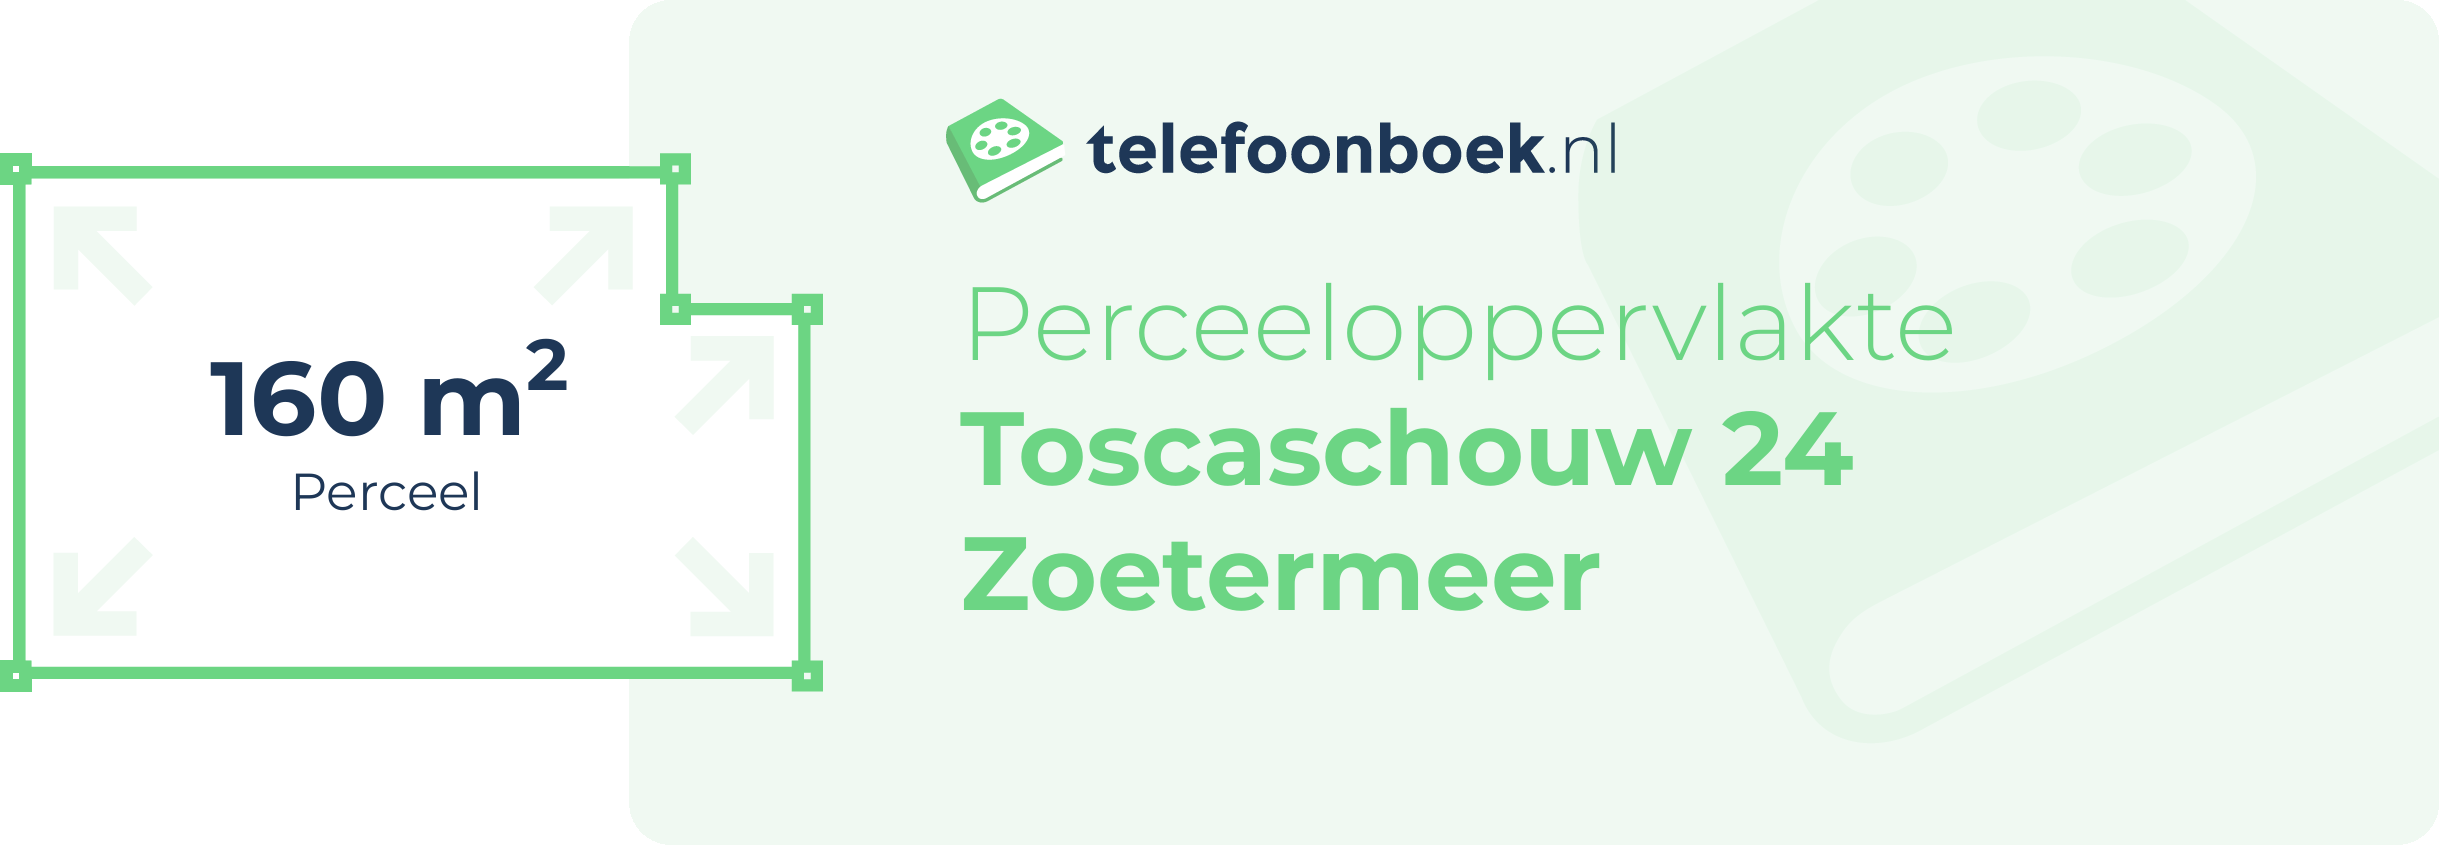 Perceeloppervlakte Toscaschouw 24 Zoetermeer